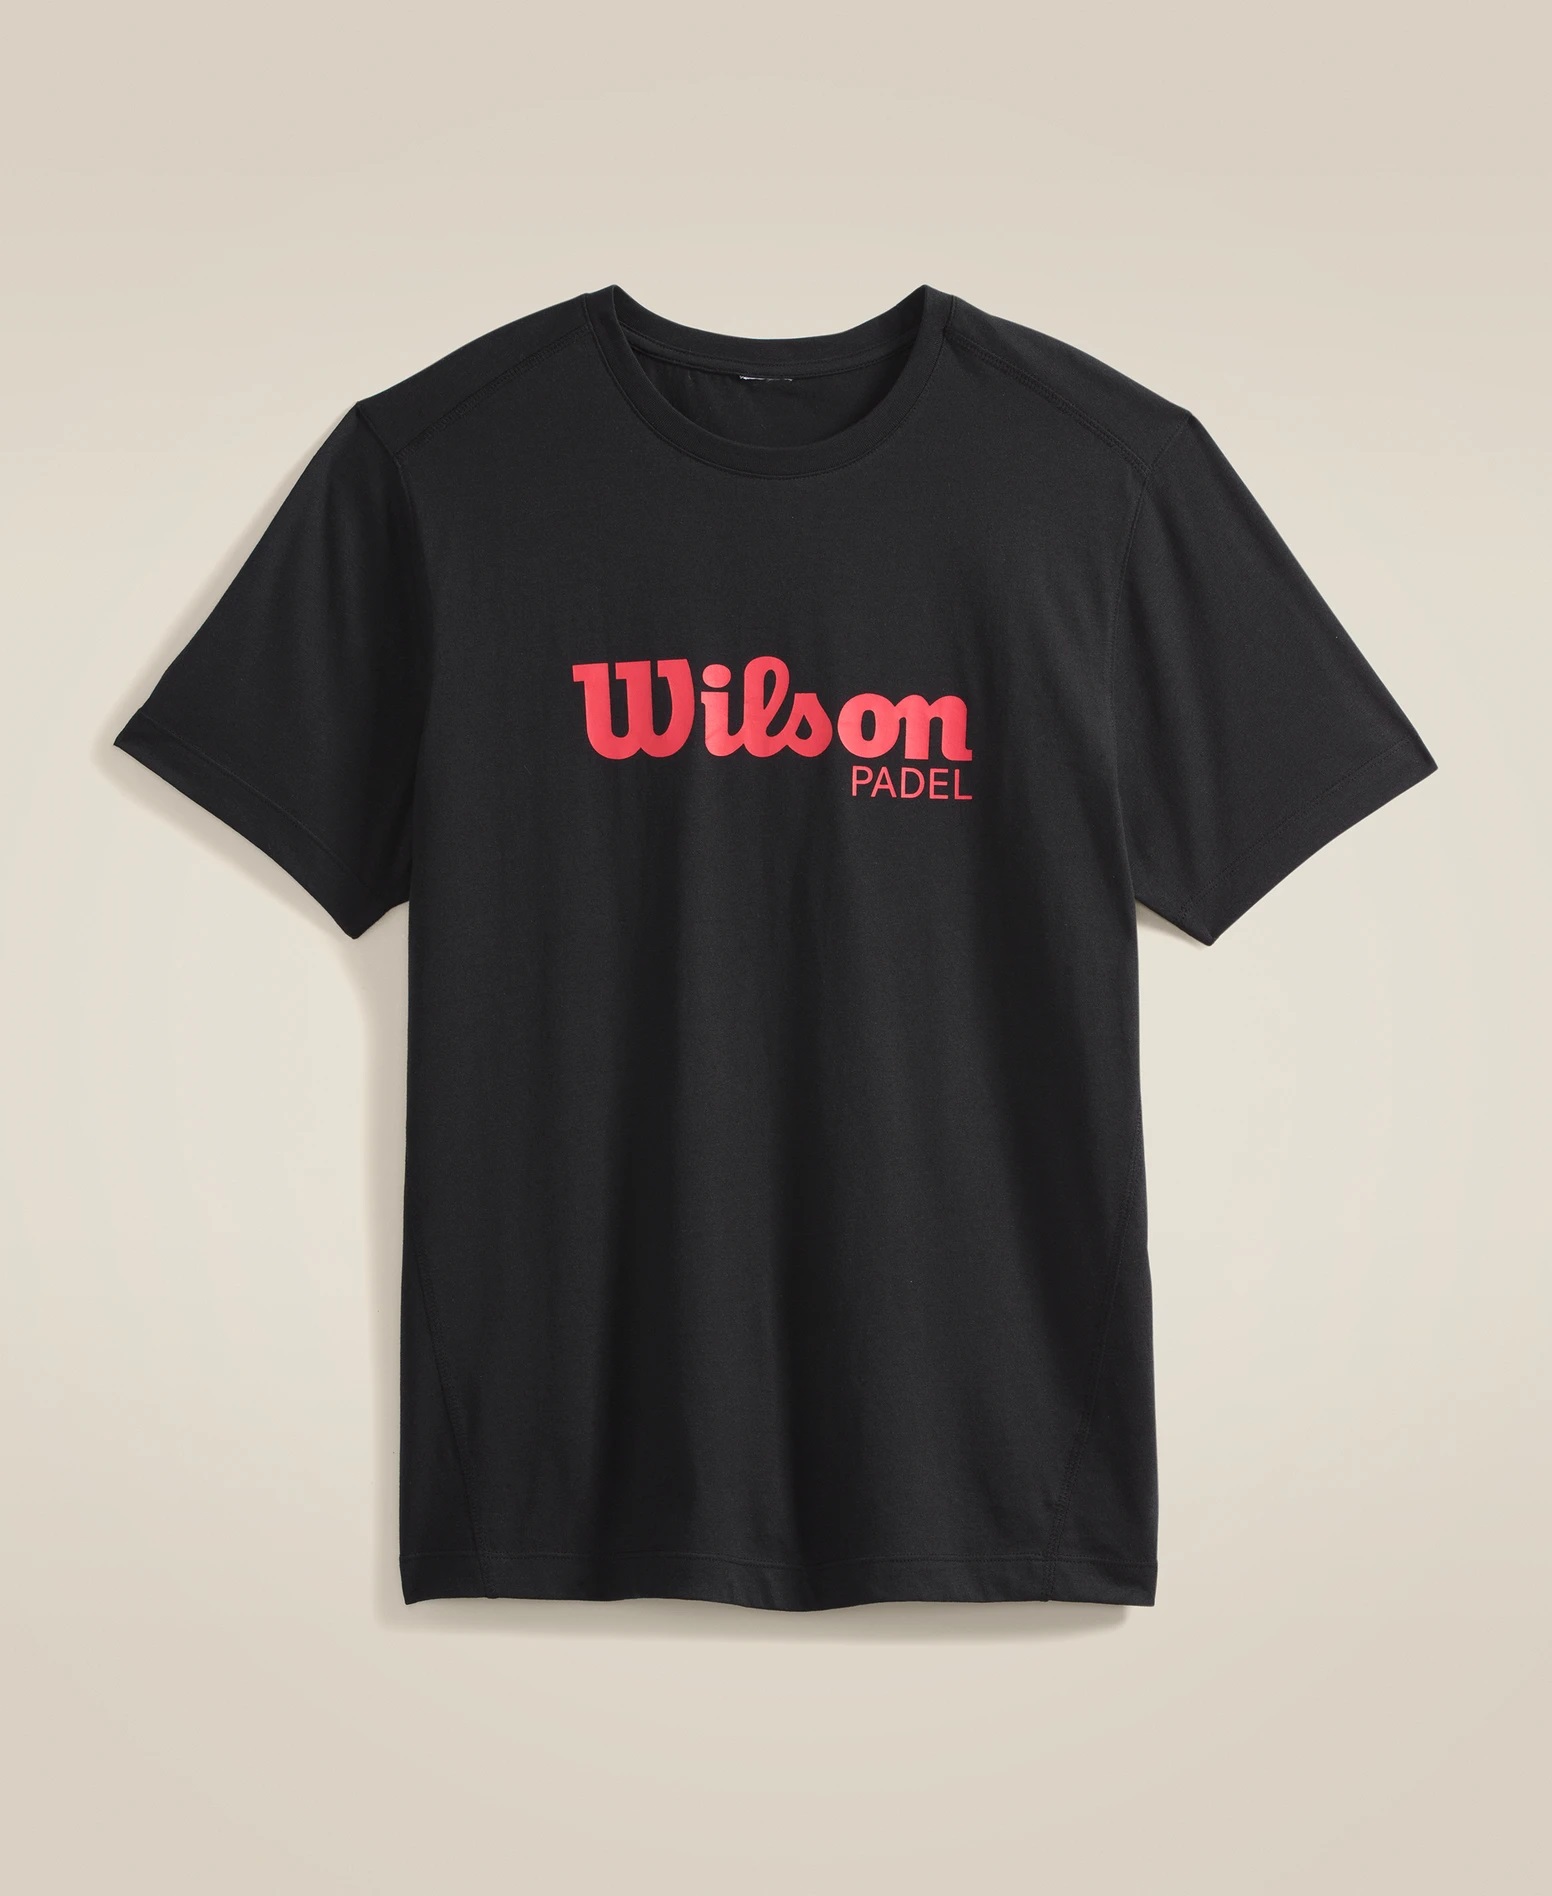 T-shirt Homem Wilson TechTee Padel Black